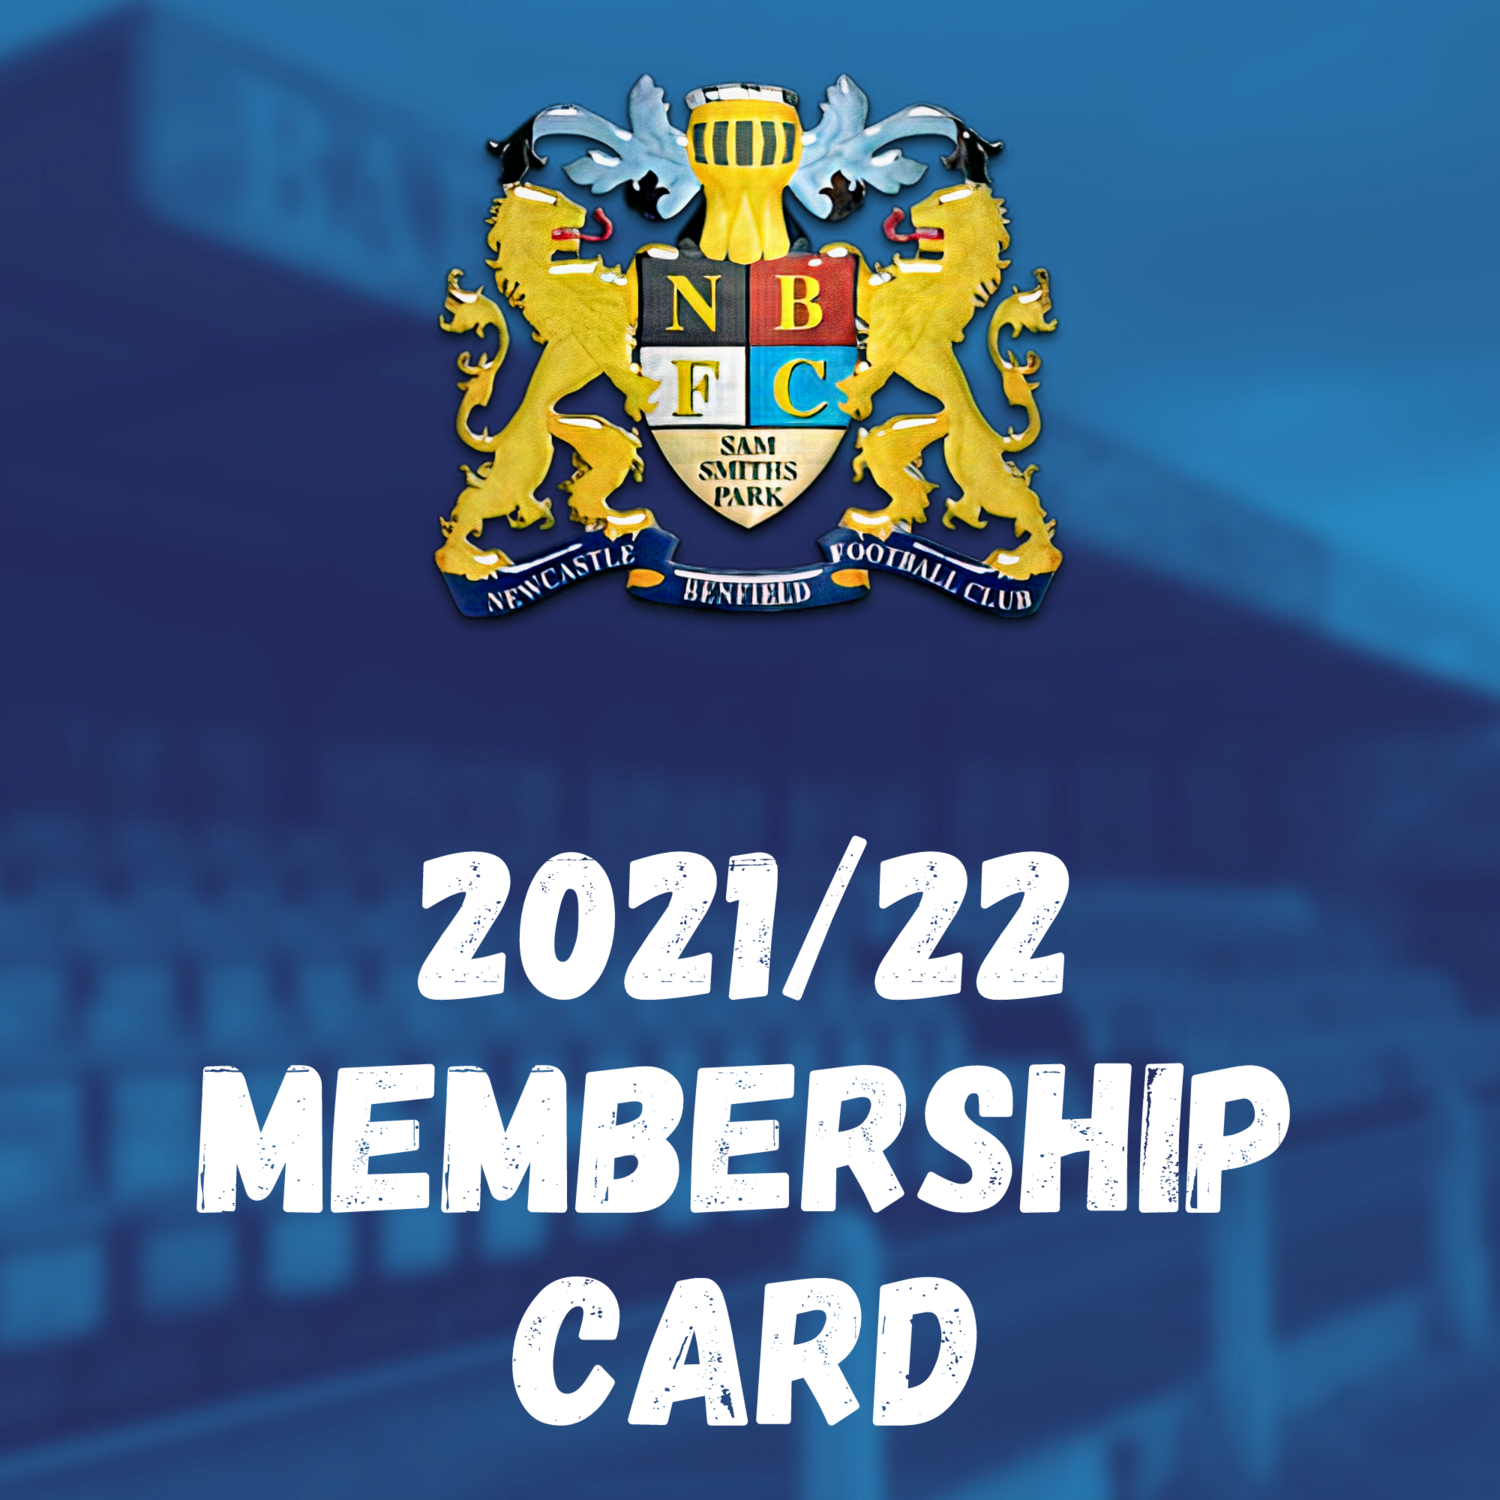 2021/22 MEMBERSHIP CARD